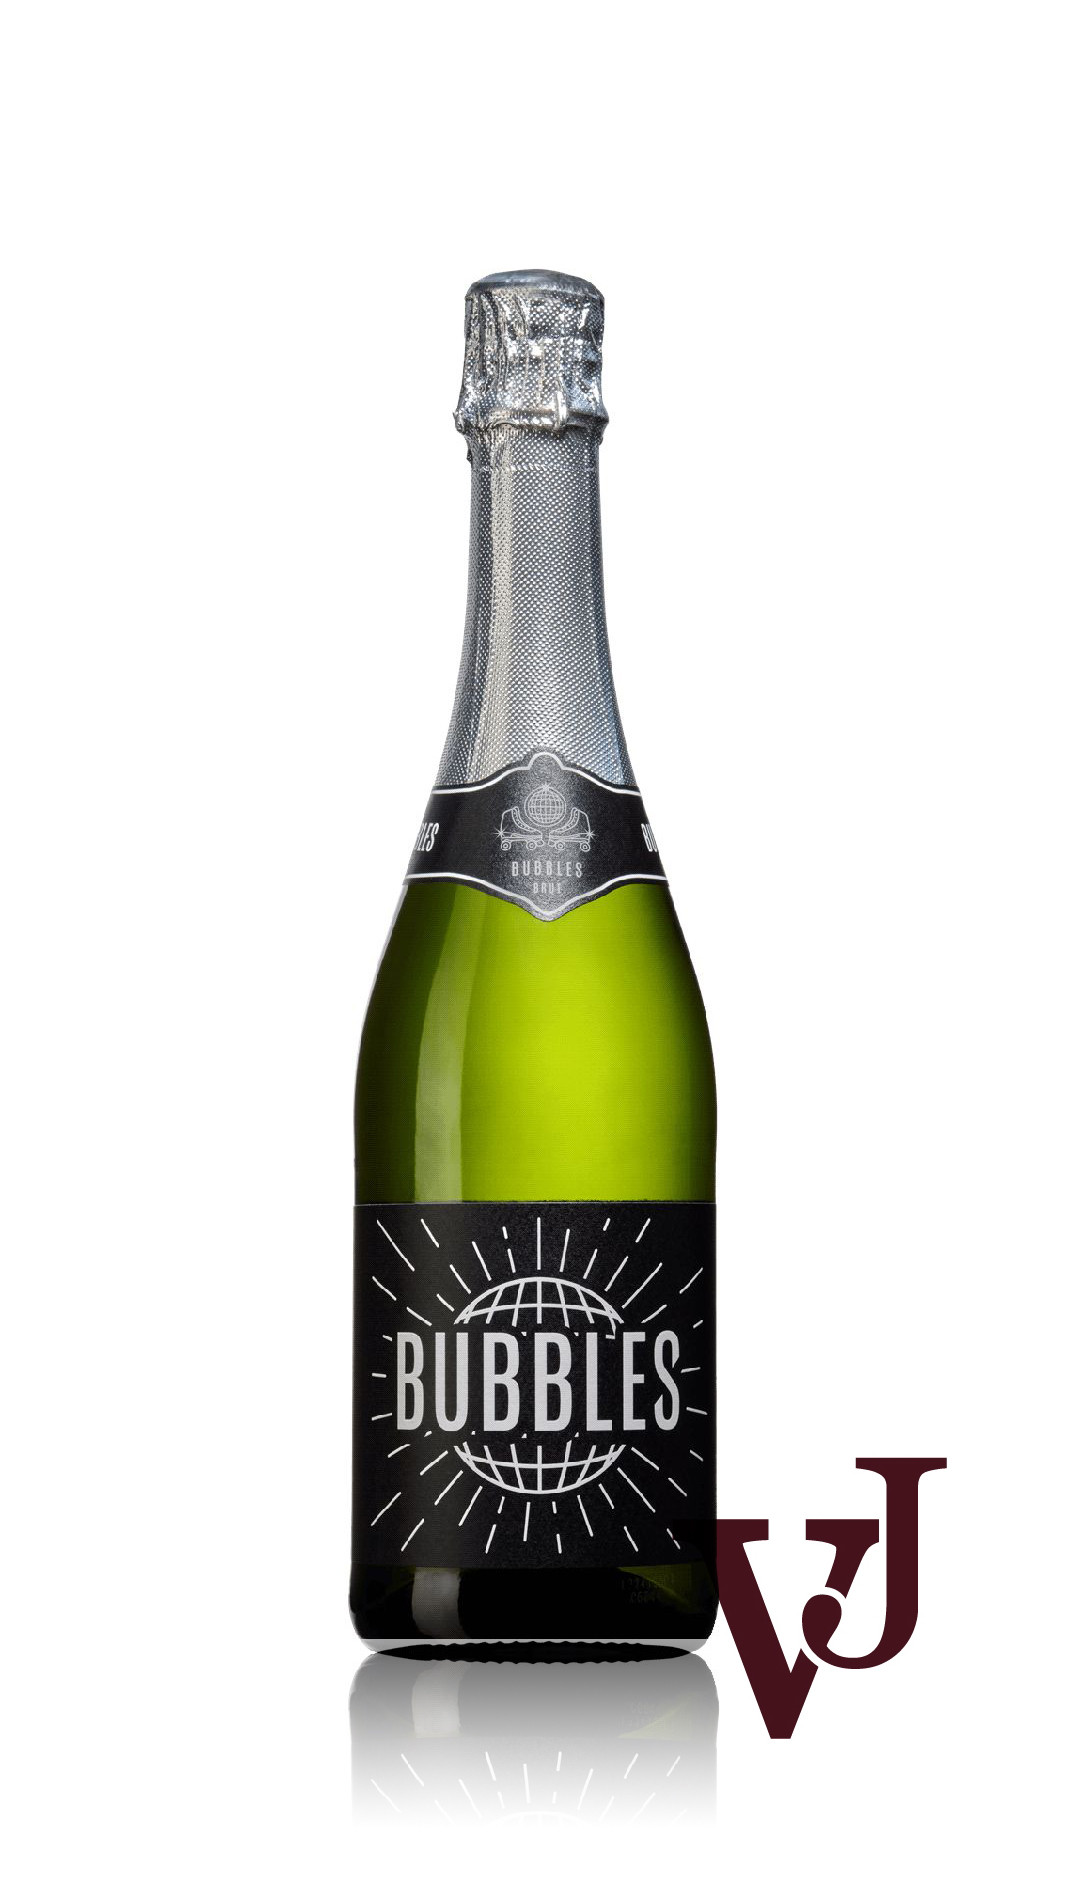 Mousserande Vin - Disco Bubbles artikel nummer 5682501 från producenten Domaine Wines från området EU